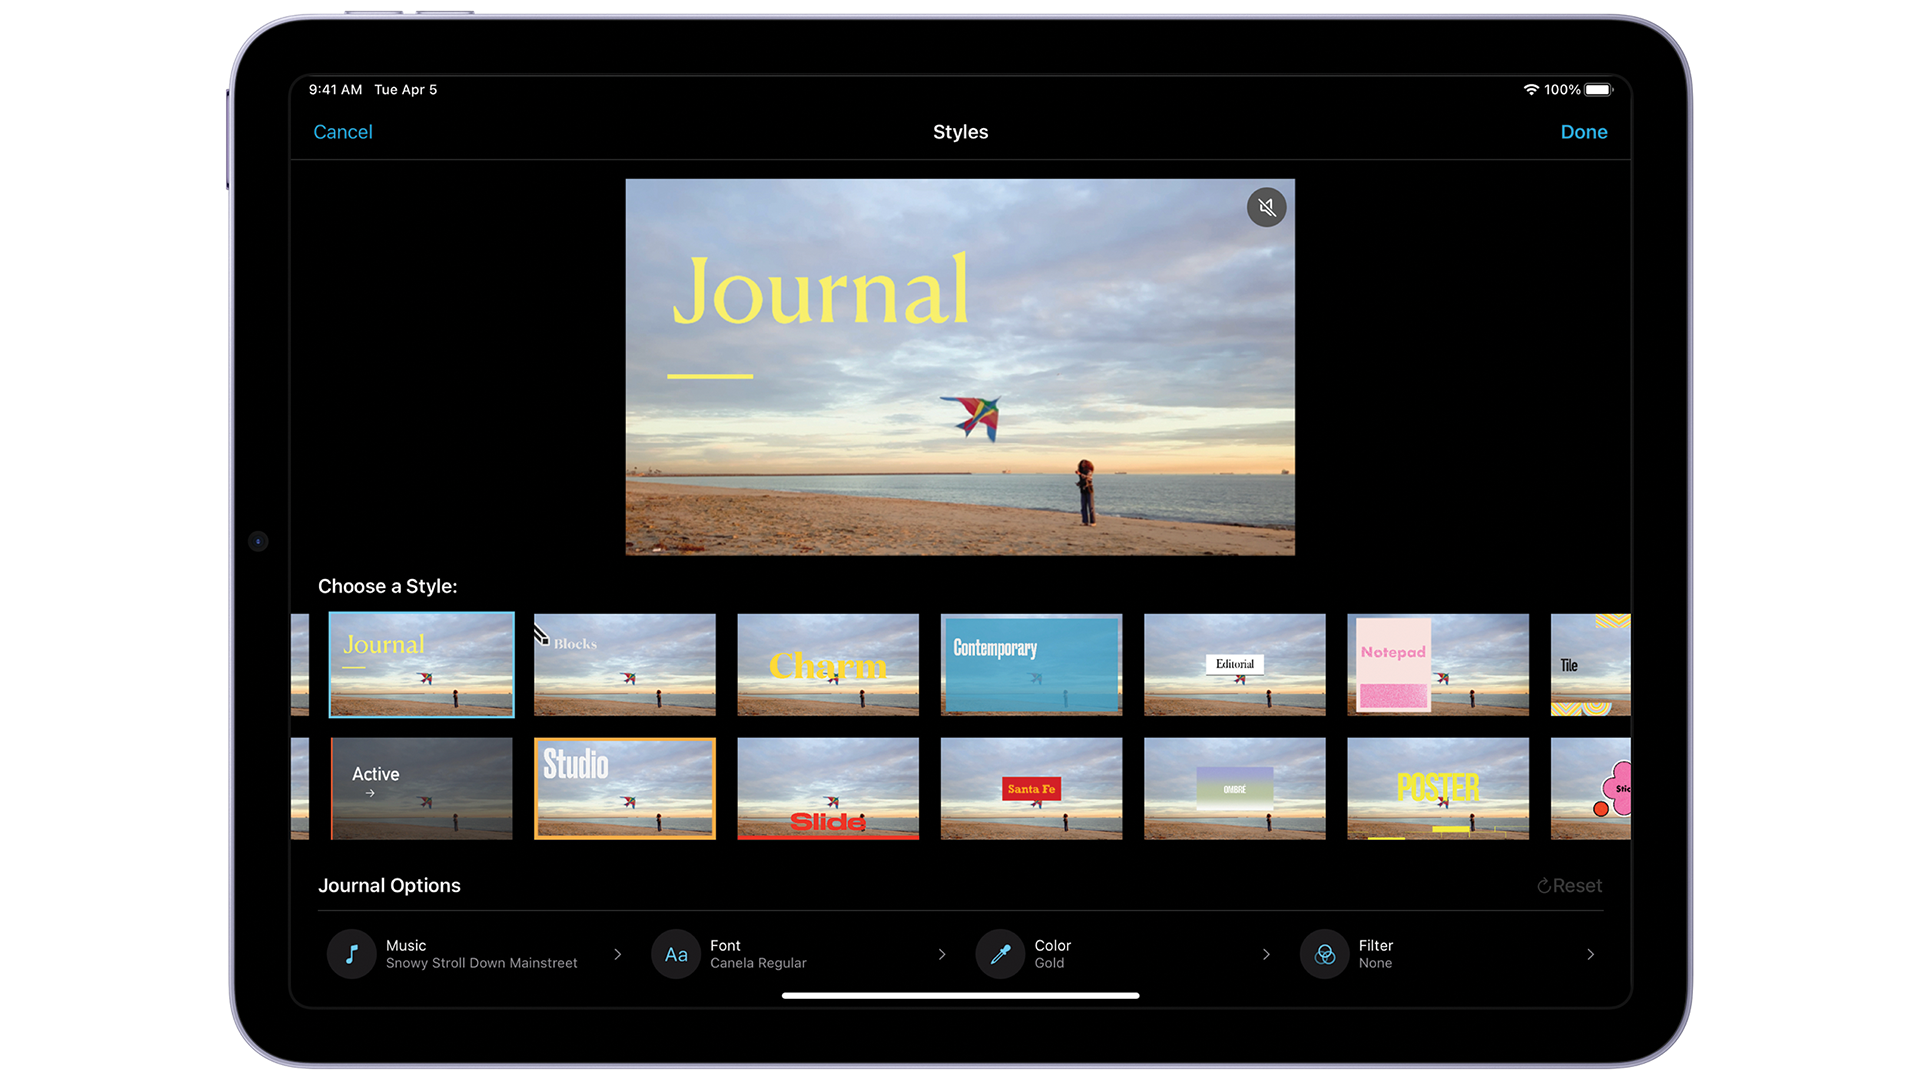 iMovie 3.0 on iPadOS